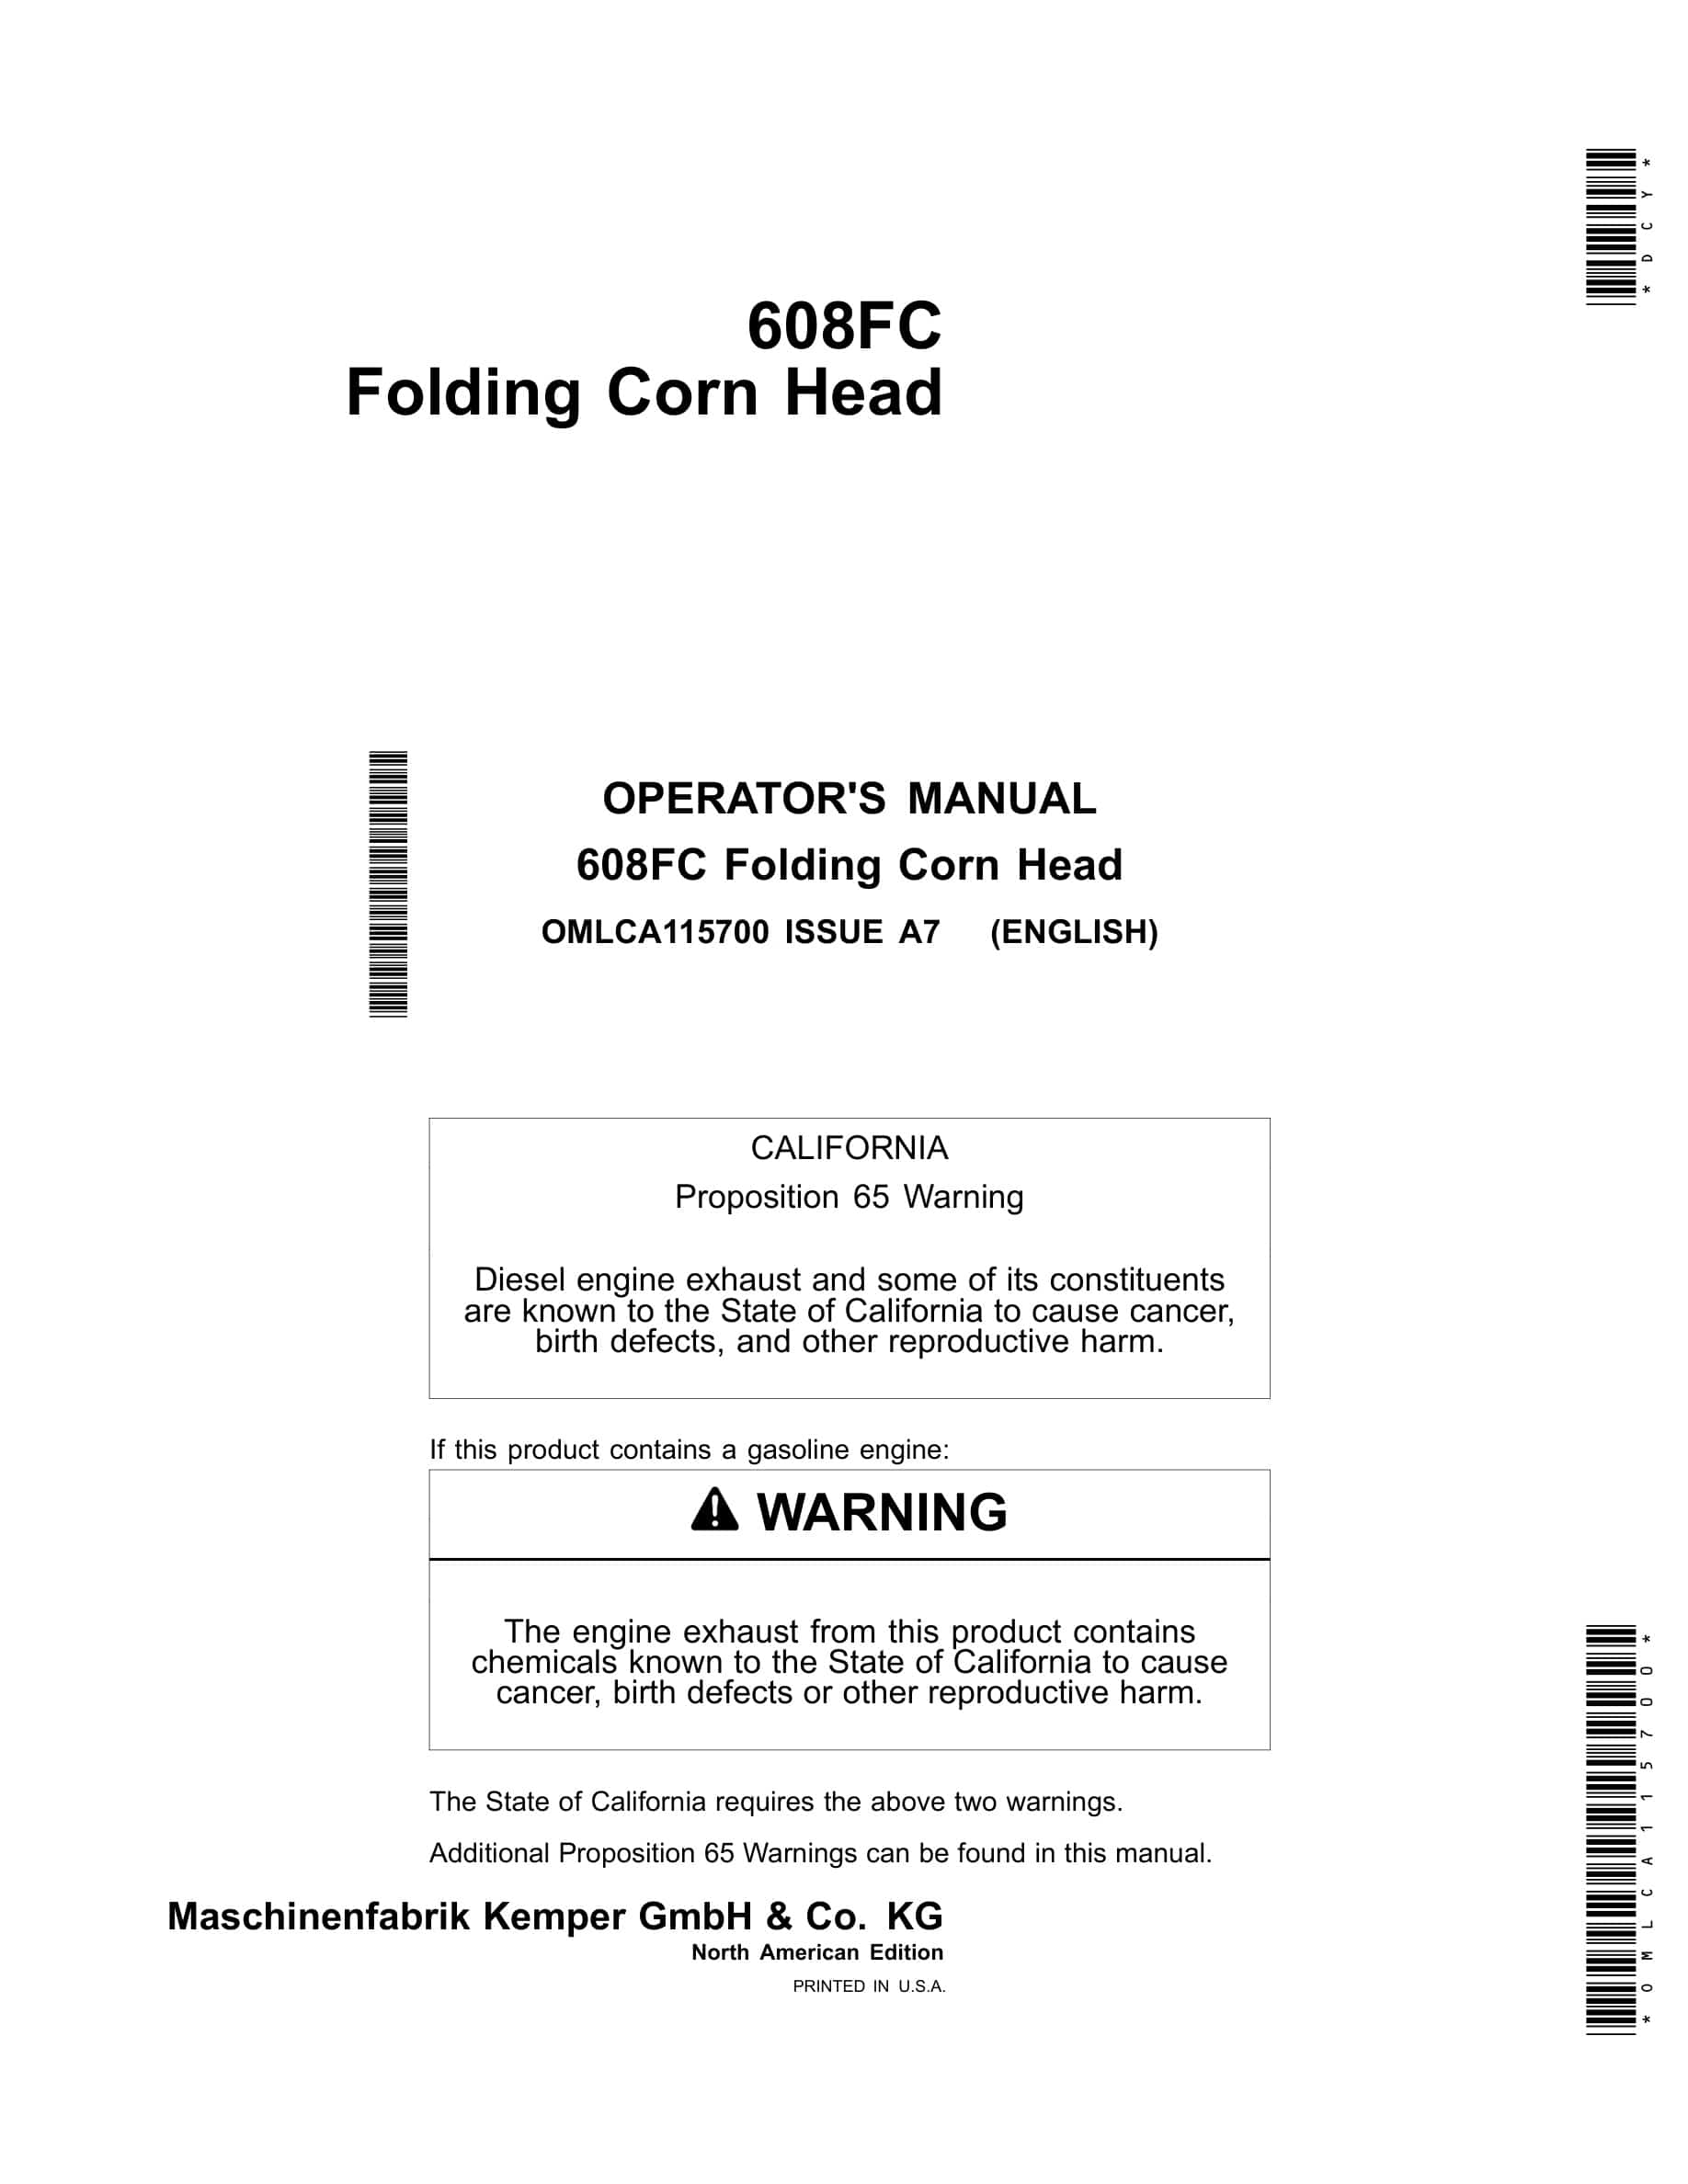 John Deere 608FC Folding Corn Head Operator Manual OMLCA115700-1